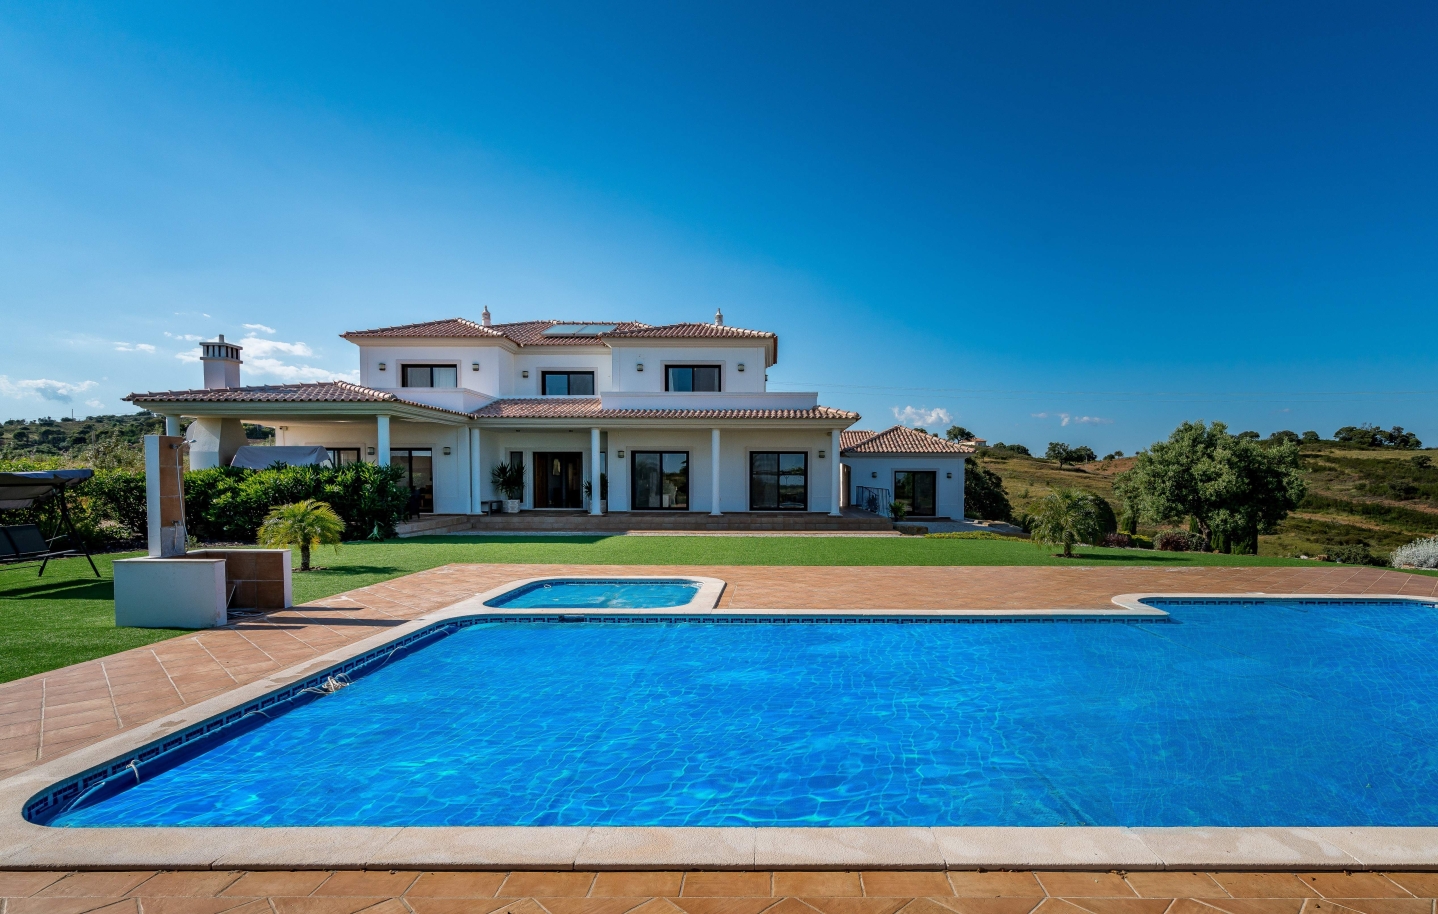 Venda de moradia com piscina em Vila Nova de Cacela, Algarve, Portugal_139481